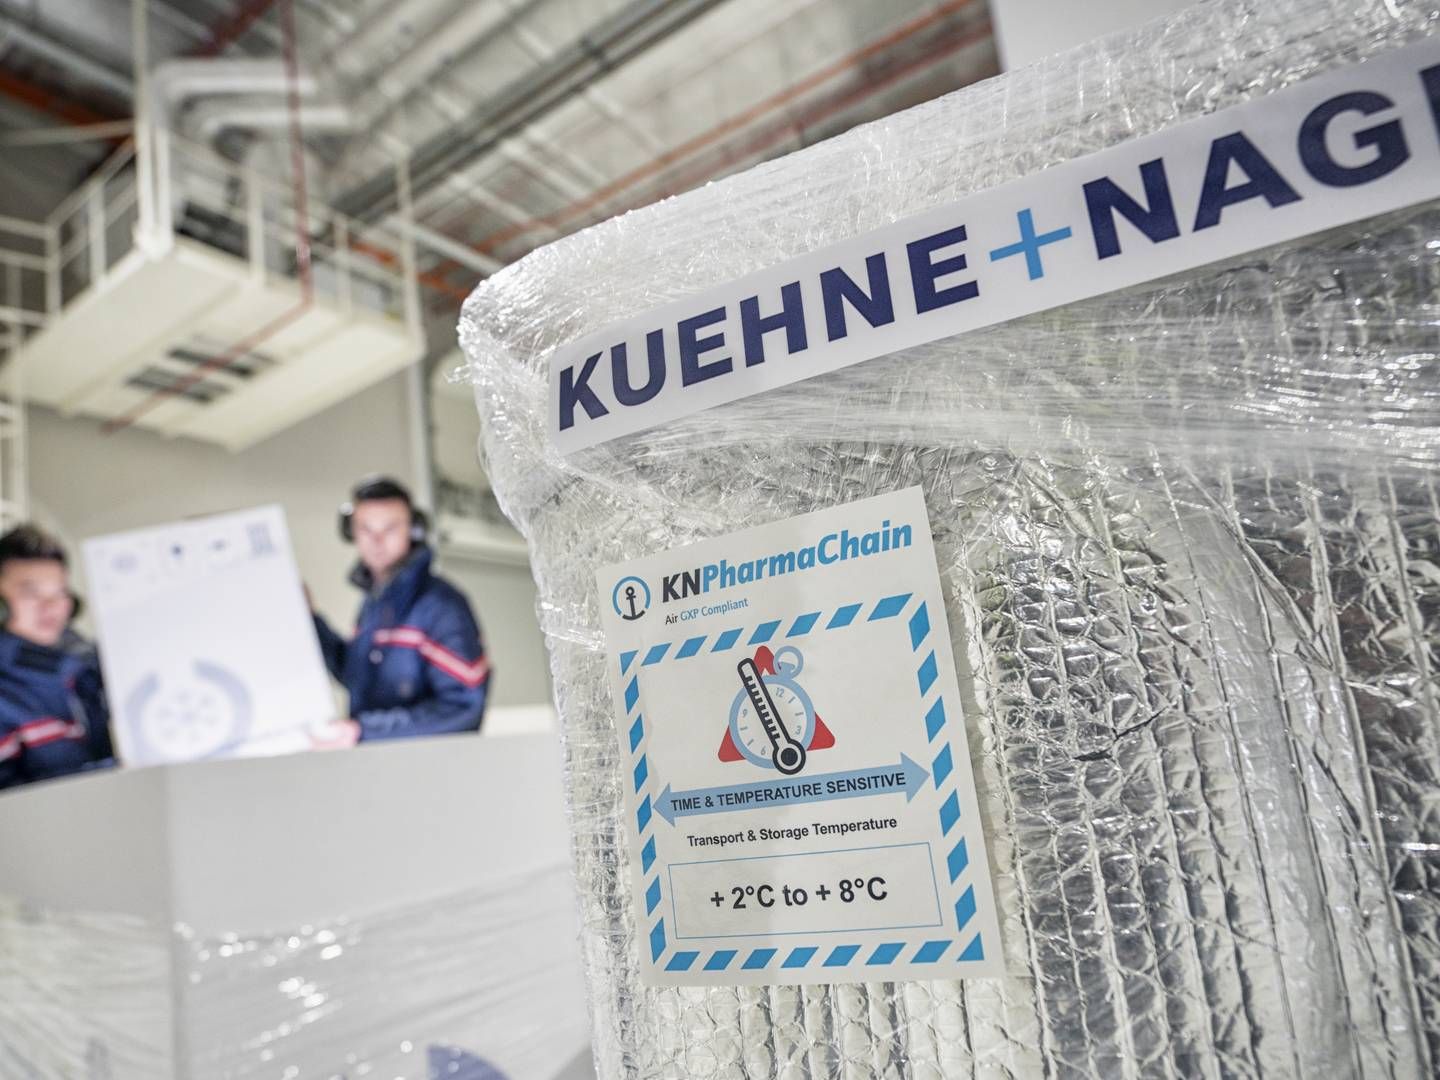 Kuhne + Nagel har nu gennemført større opkøb i Østen. | Foto: Kuehne+Nagel